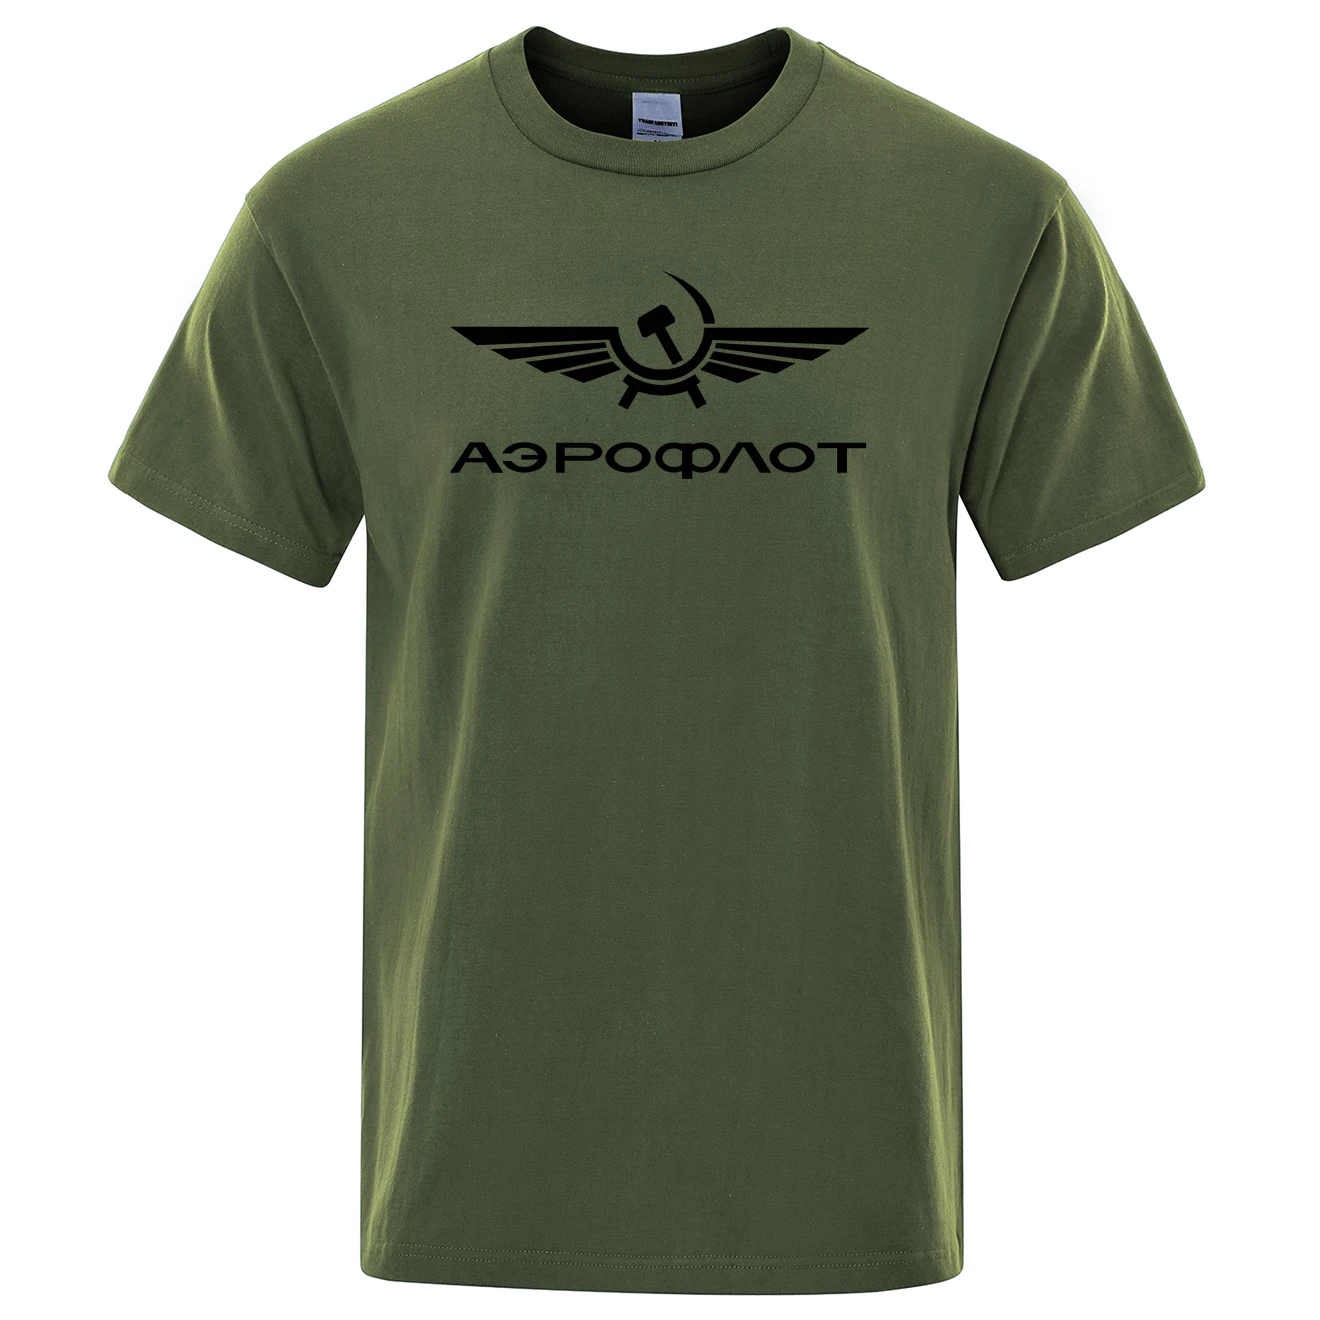 Aeroflot Aviación Russe Pilote Aeroespacial Aviateur Camiseta de Verano de Algodón de Manga Corta de la Moda Tops O-Cuello Elegante camisa de Hombre T 4